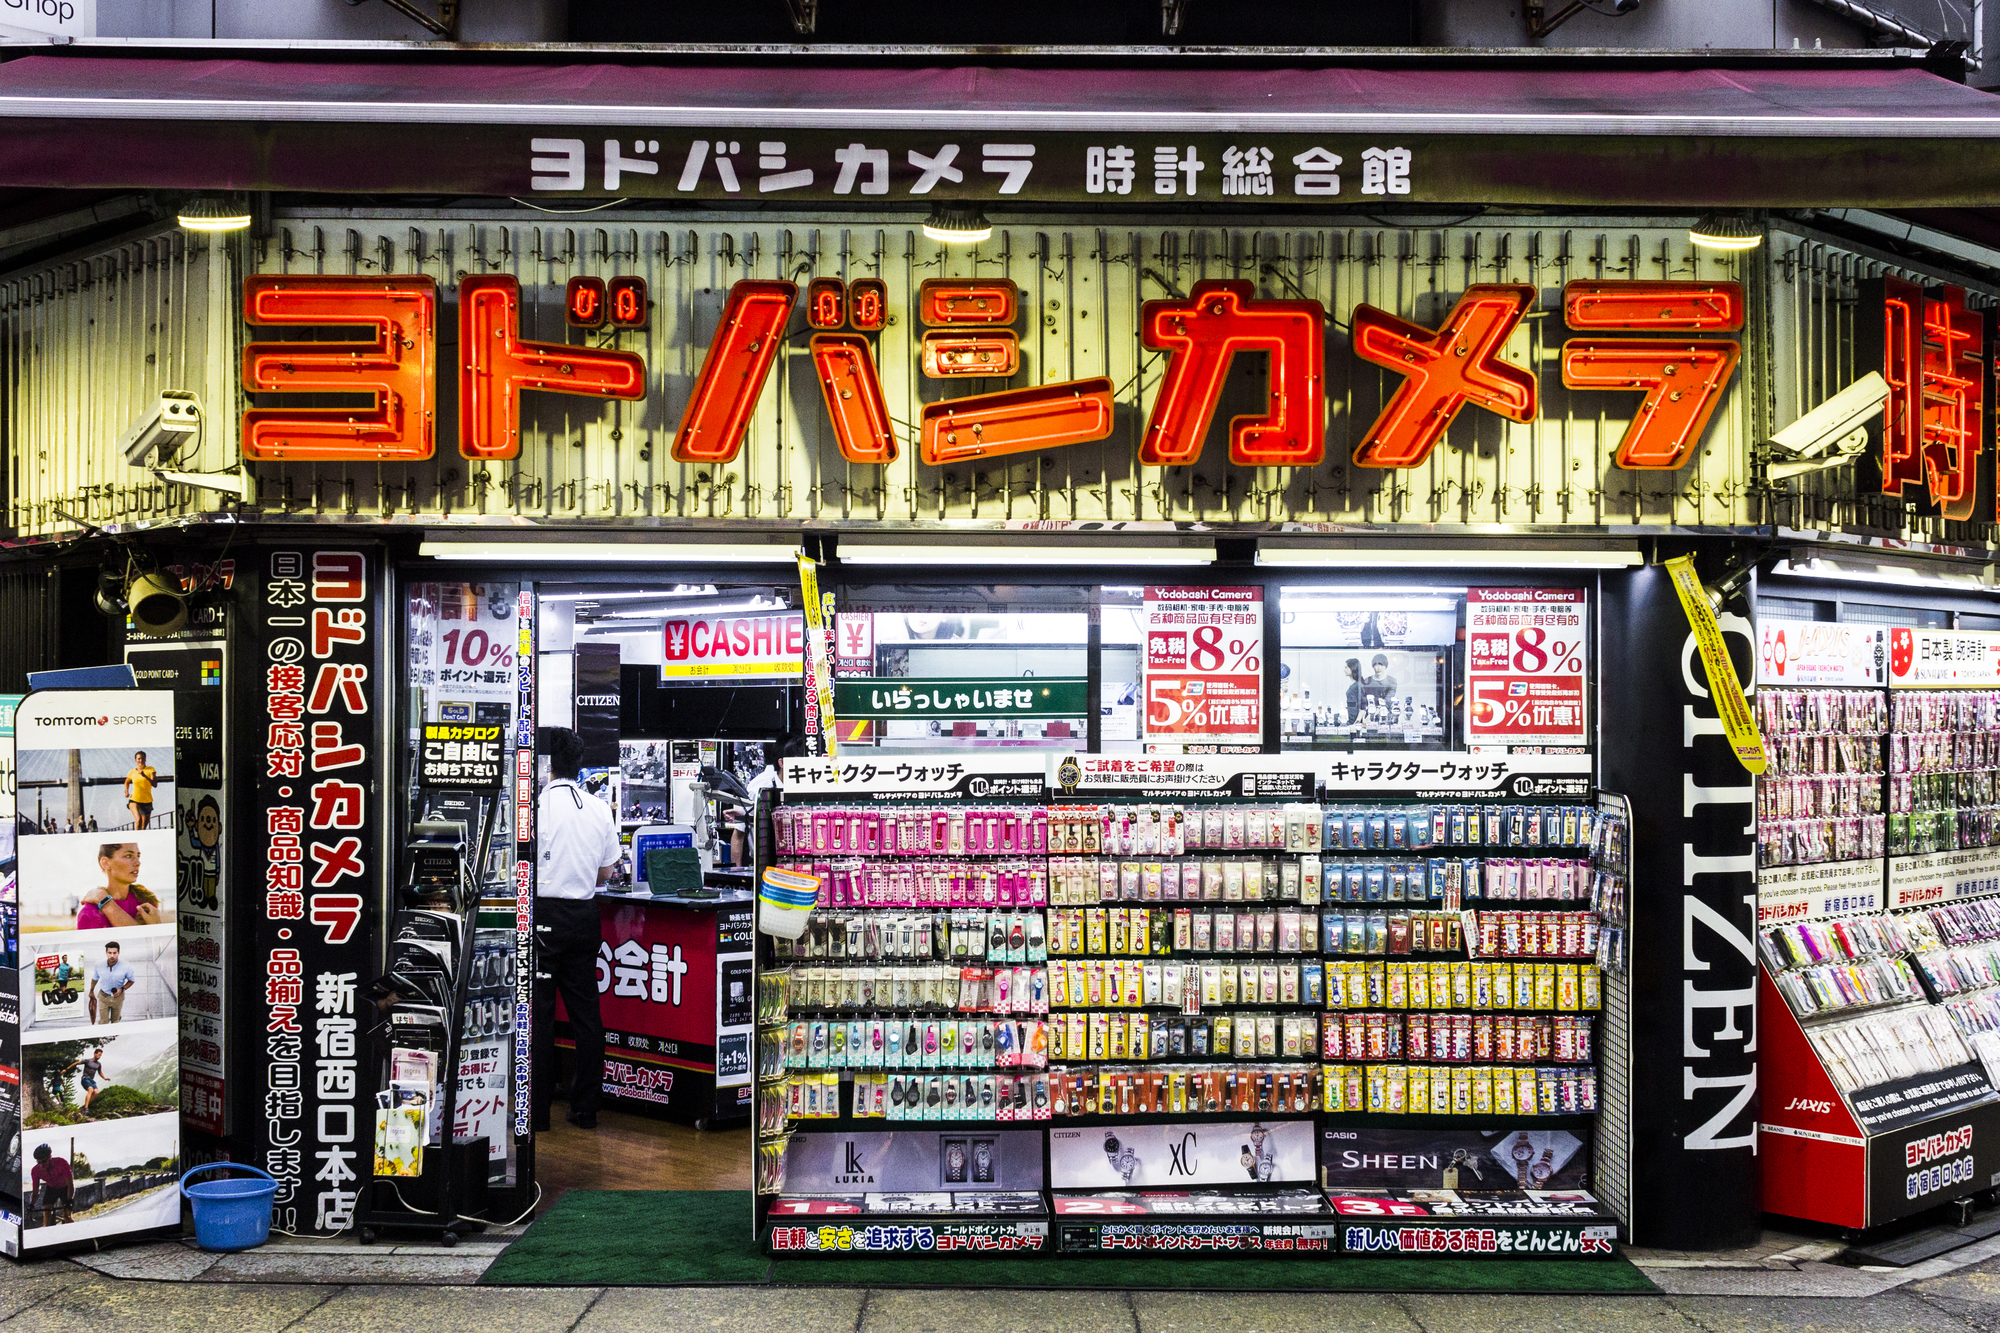 Der Tax-Free-Einkauf in Elektronikshops wie Yodobashi-Camera lohnt sich heute schon.